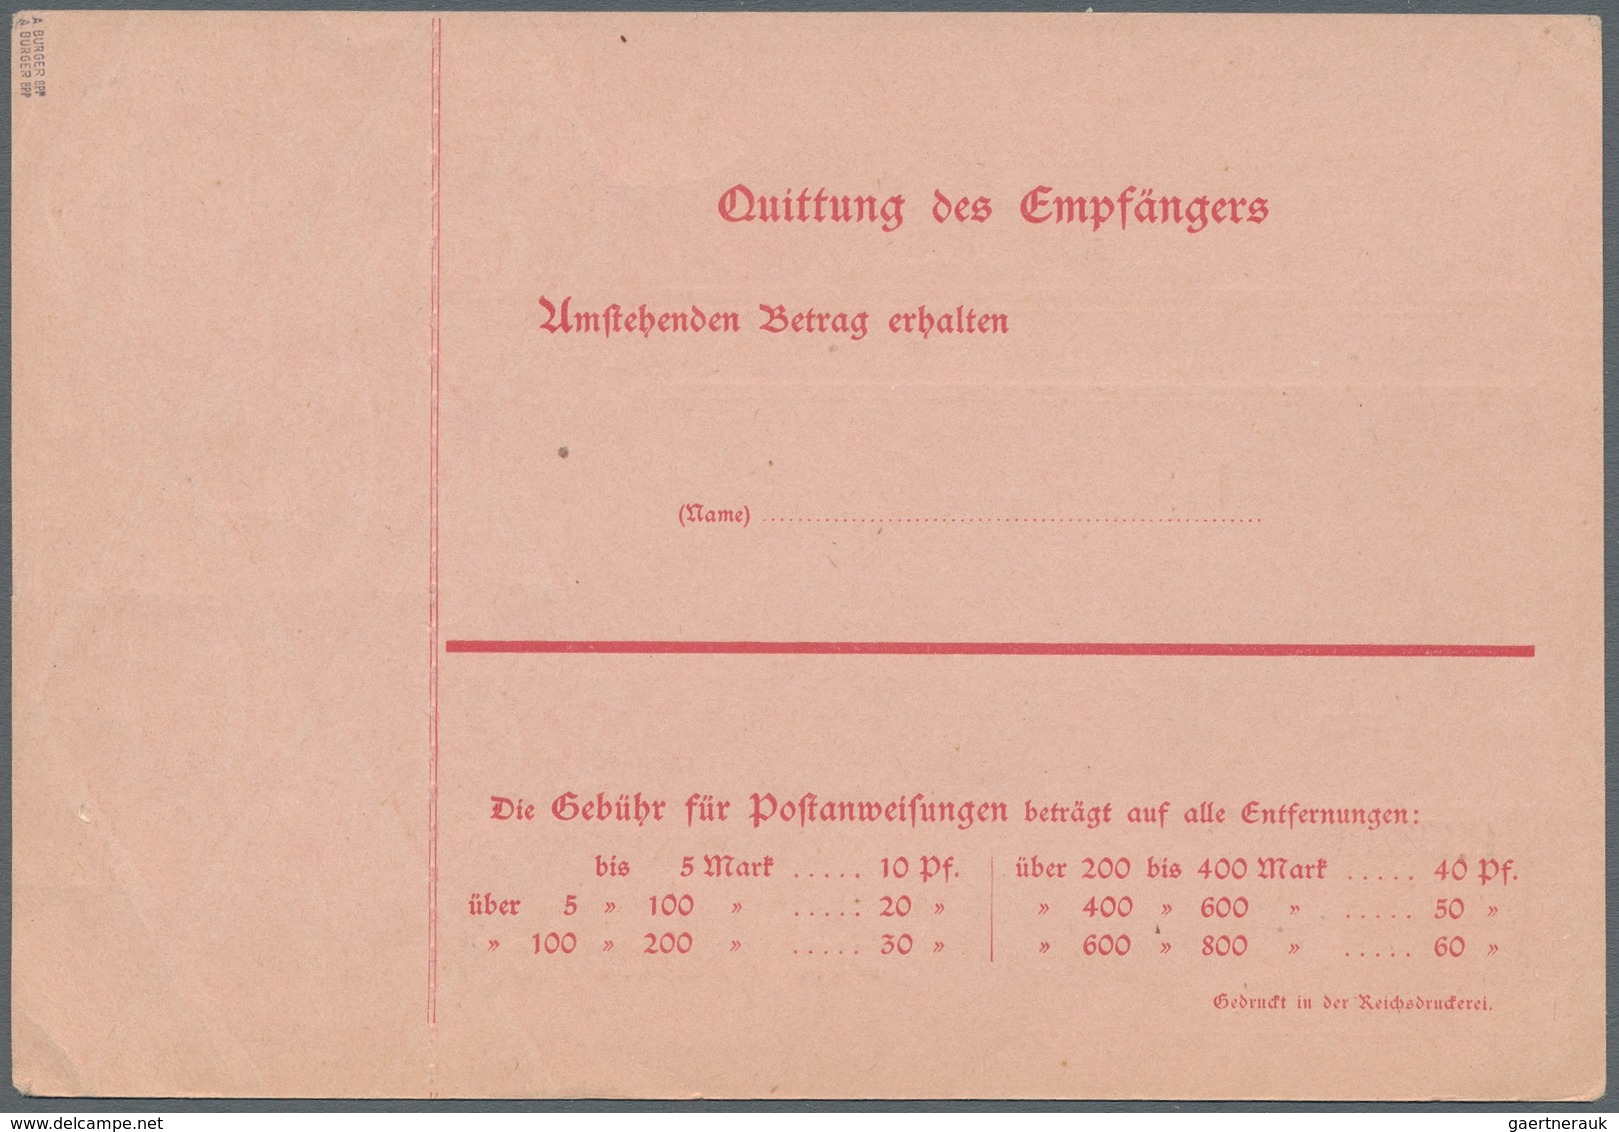 Deutsche Abstimmungsgebiete: Saargebiet - Ganzsachen: 1920/21, "10 Pfg. Germania/Saargebiet", Ungebr - Ganzsachen